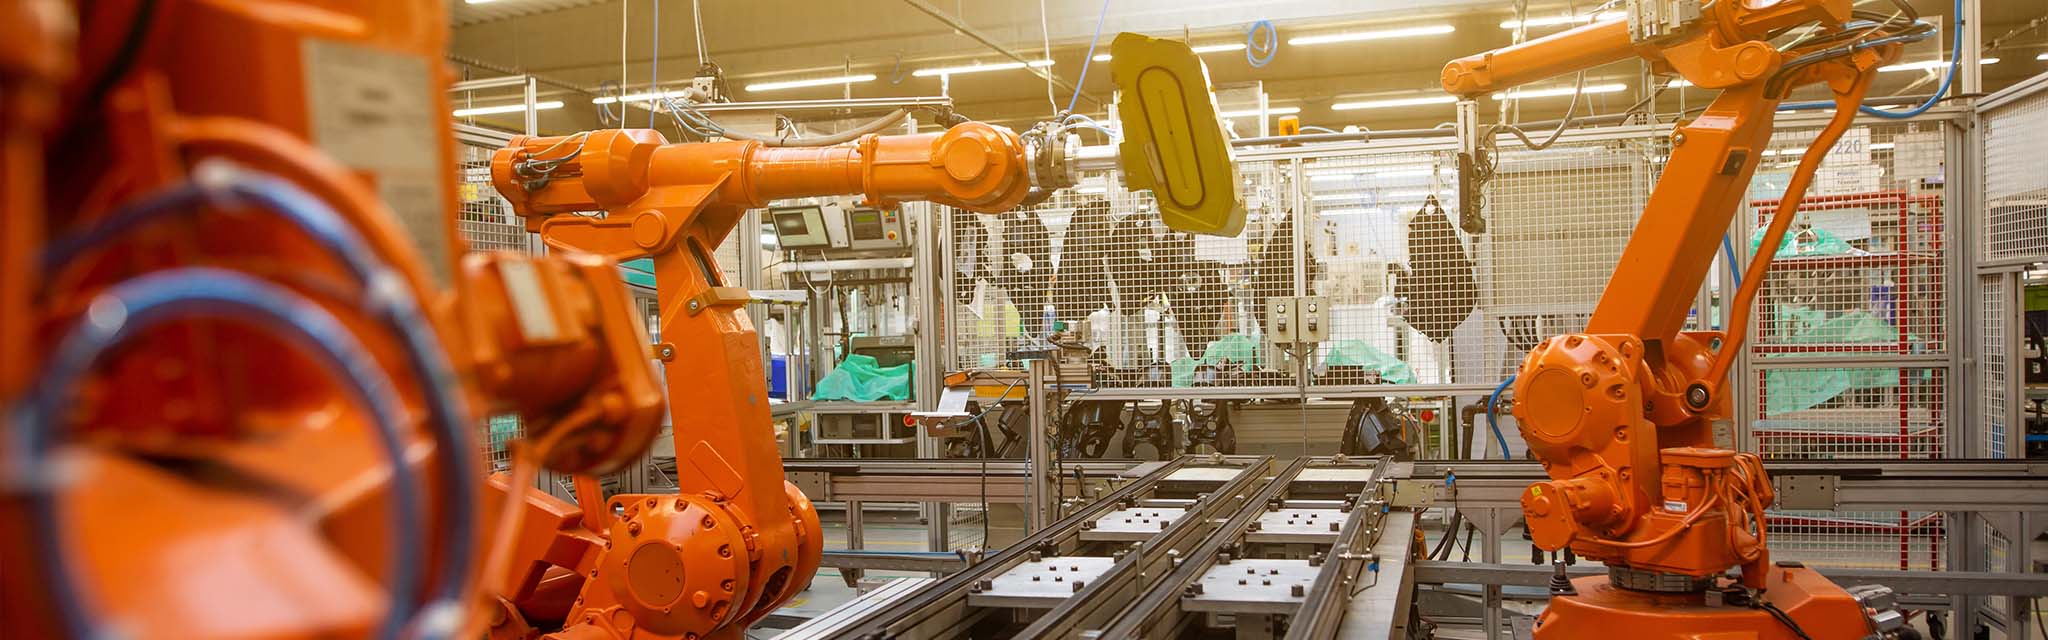 Robot industriels en action